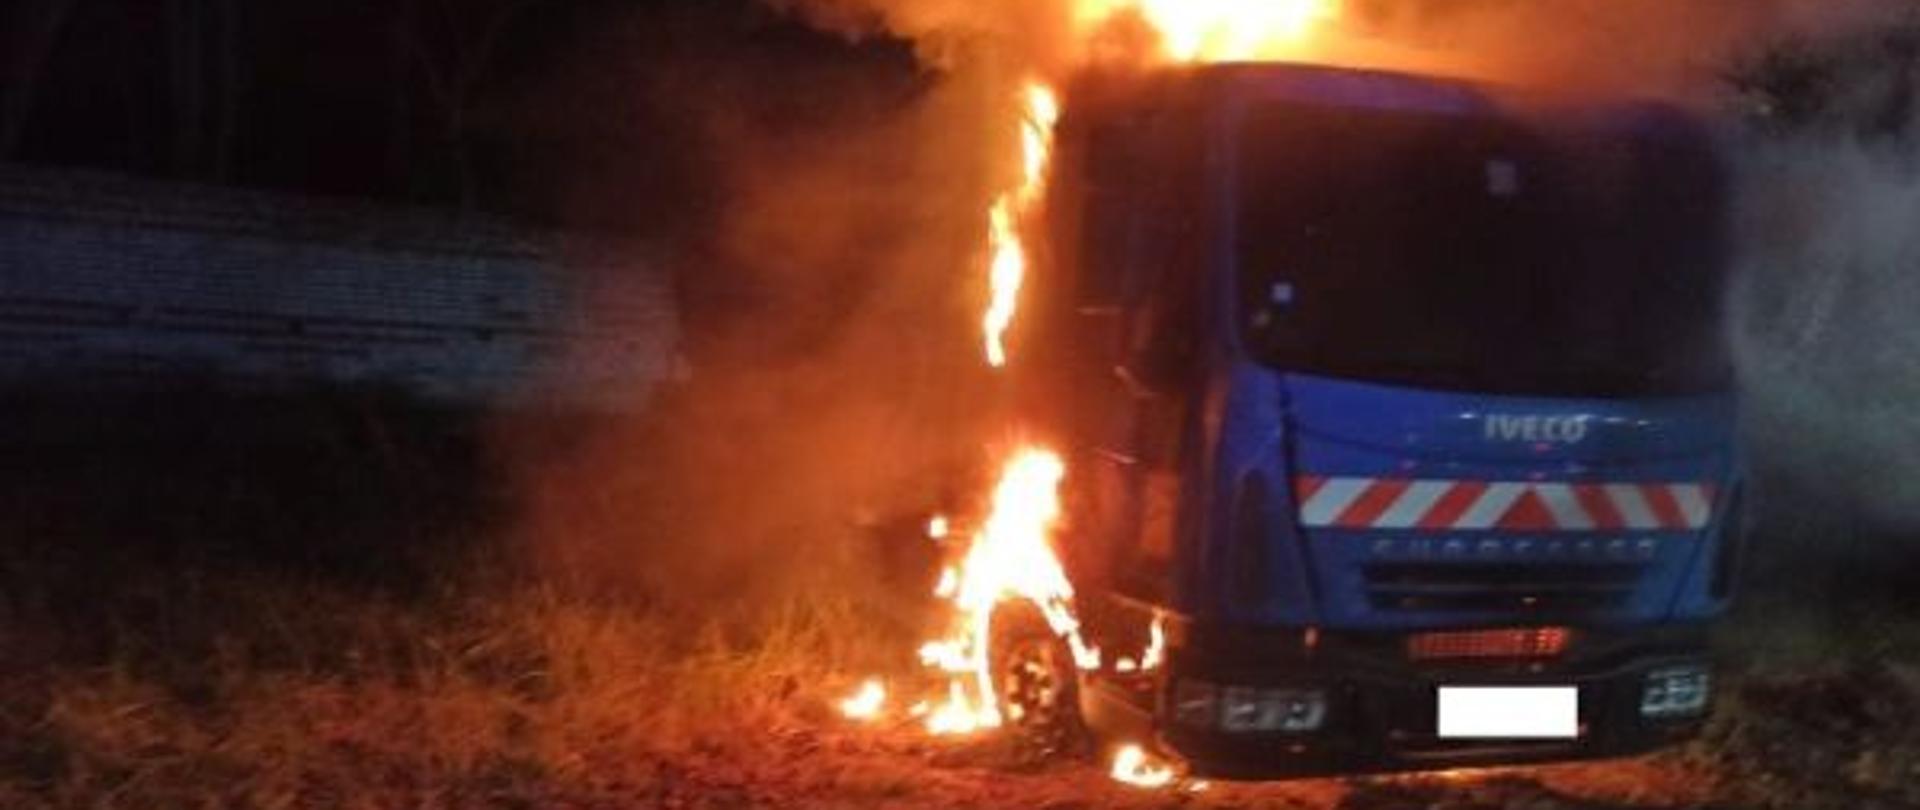 Zdjęcie wykonane w nocy. Centralny punkt zdjęcia stanowi kabina auta ciężarowego. Kabina objęta ogniem. Zdjęcie rozświetla palące się auto.